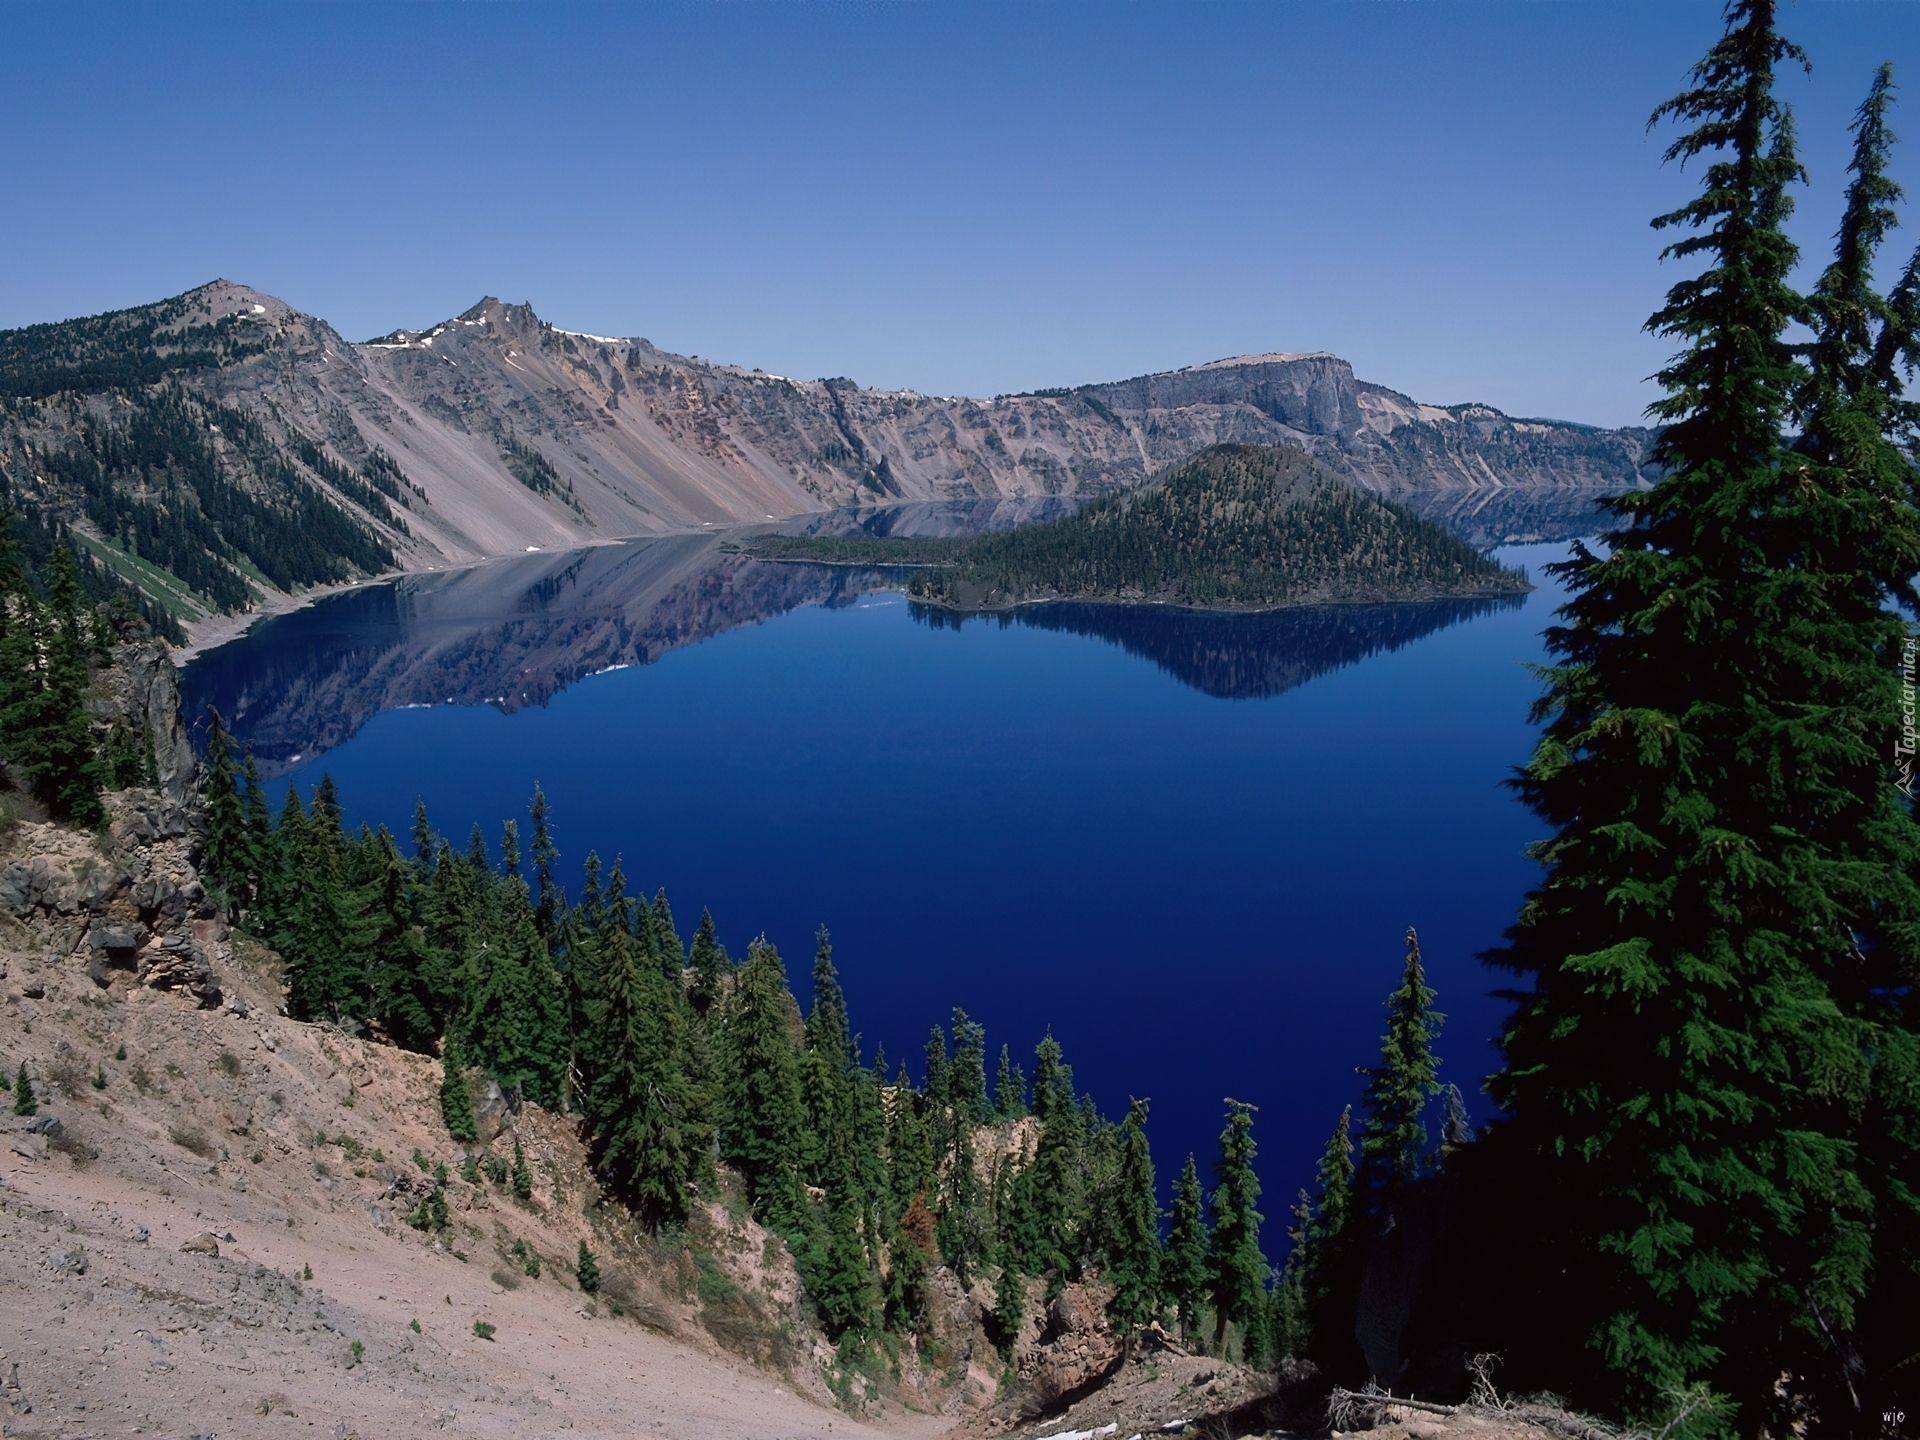 Картинки рек и озер. Кратерное озеро в Орегоне. Озеро Крейтер, штат Орегон. Горное озеро Байкал. Озеро Лазурное ХМАО.